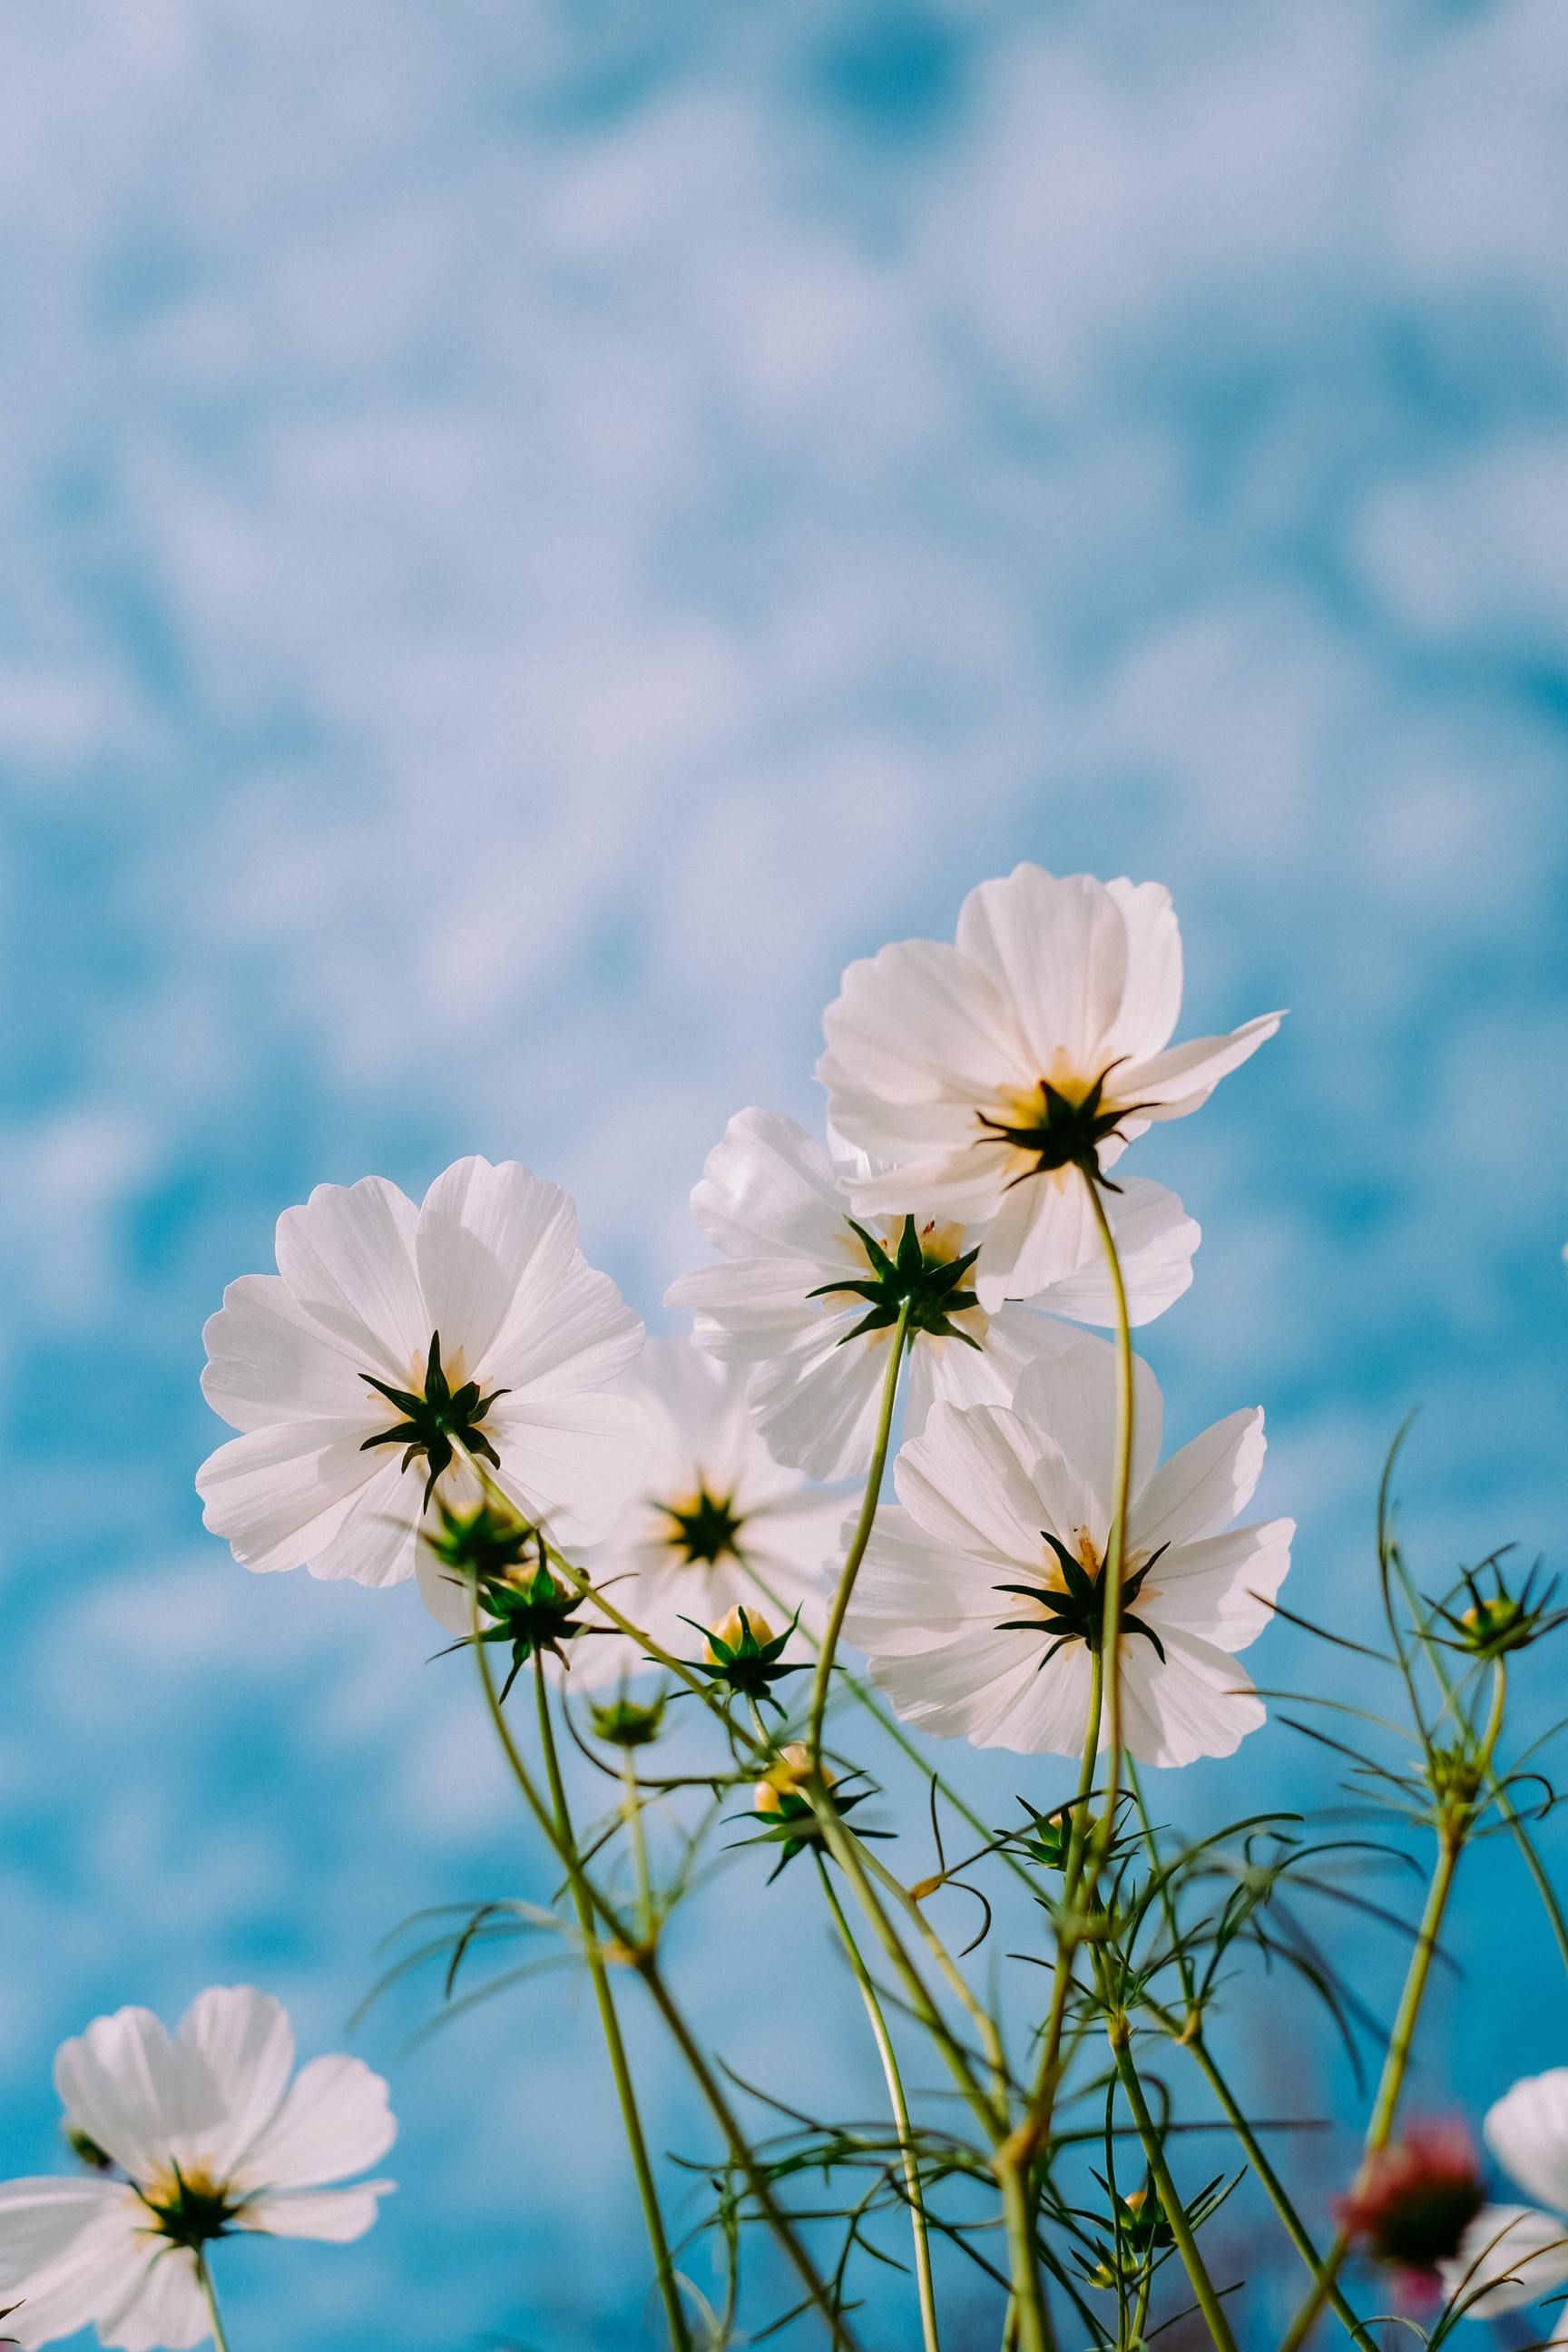 Bầu trời xanh hoe xen lẫn cùng những bông hoa tươi đẹp trong hình ảnh này chắc chắn sẽ khiến bạn cảm thấy bình yên và tự do hơn bao giờ hết.